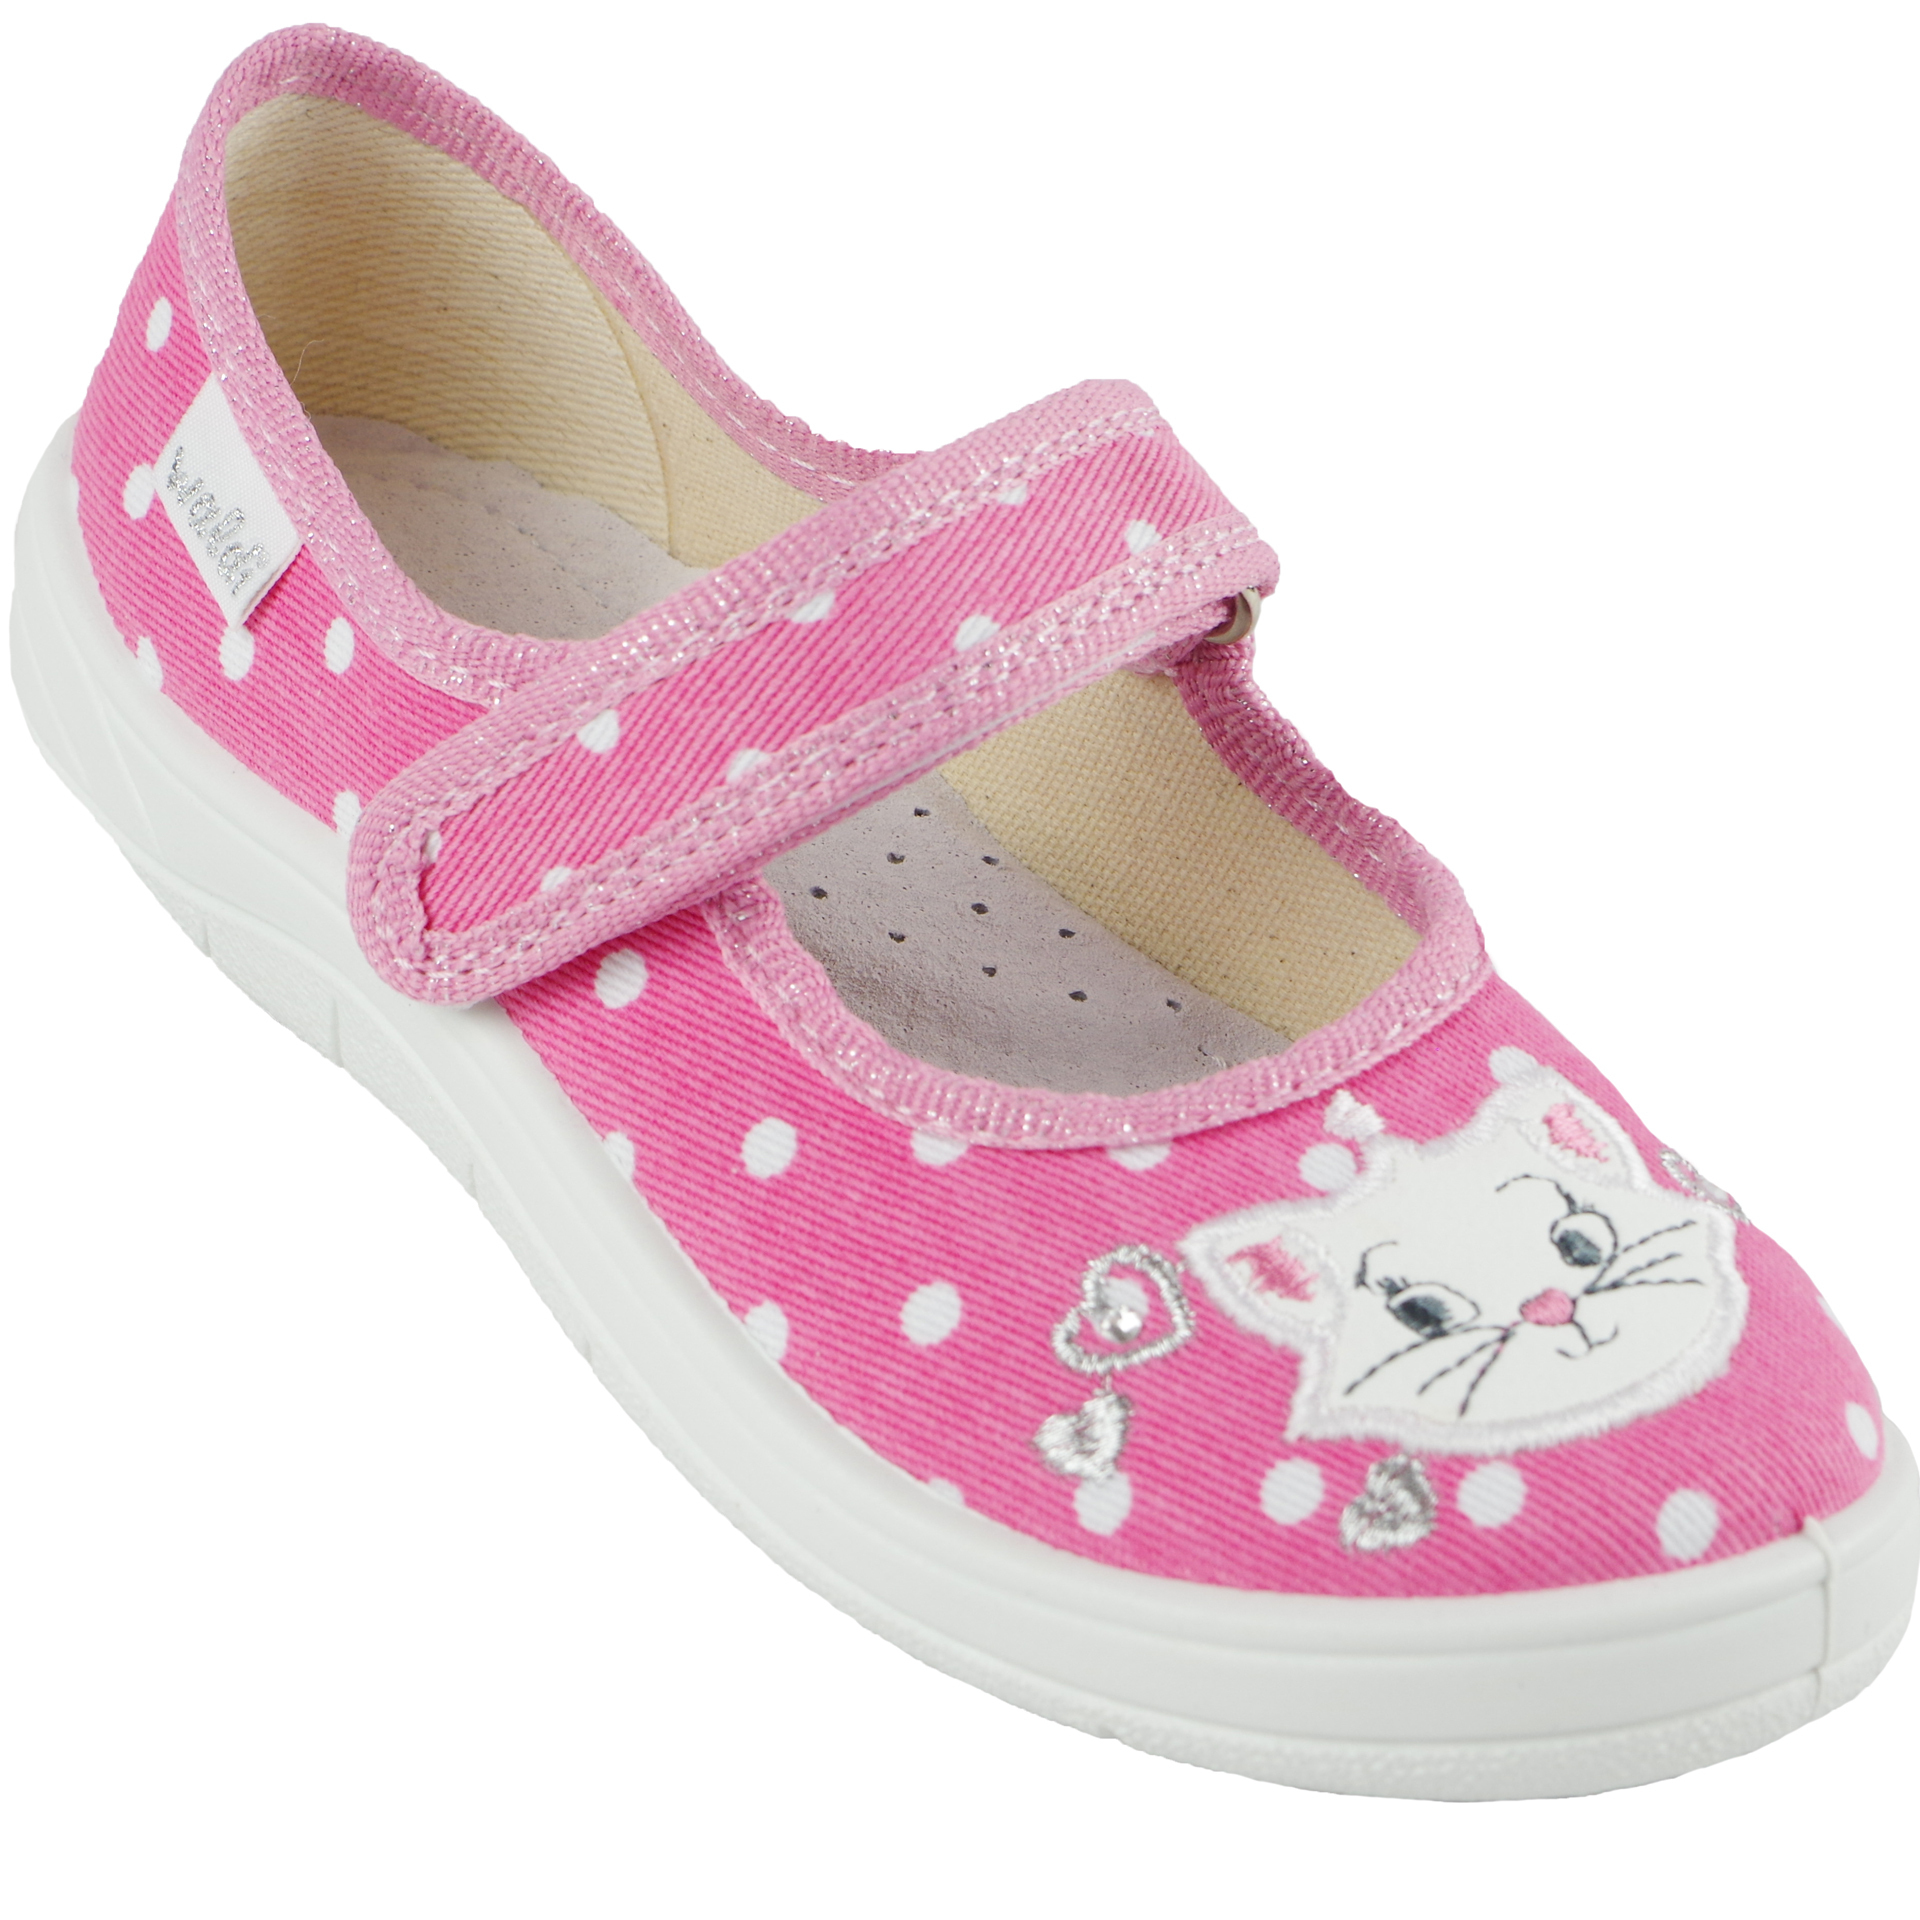 Текстильная обувь для девочек Тапочки Алина (1869) цвет Розовый 24-30 размеры – Sole Kids